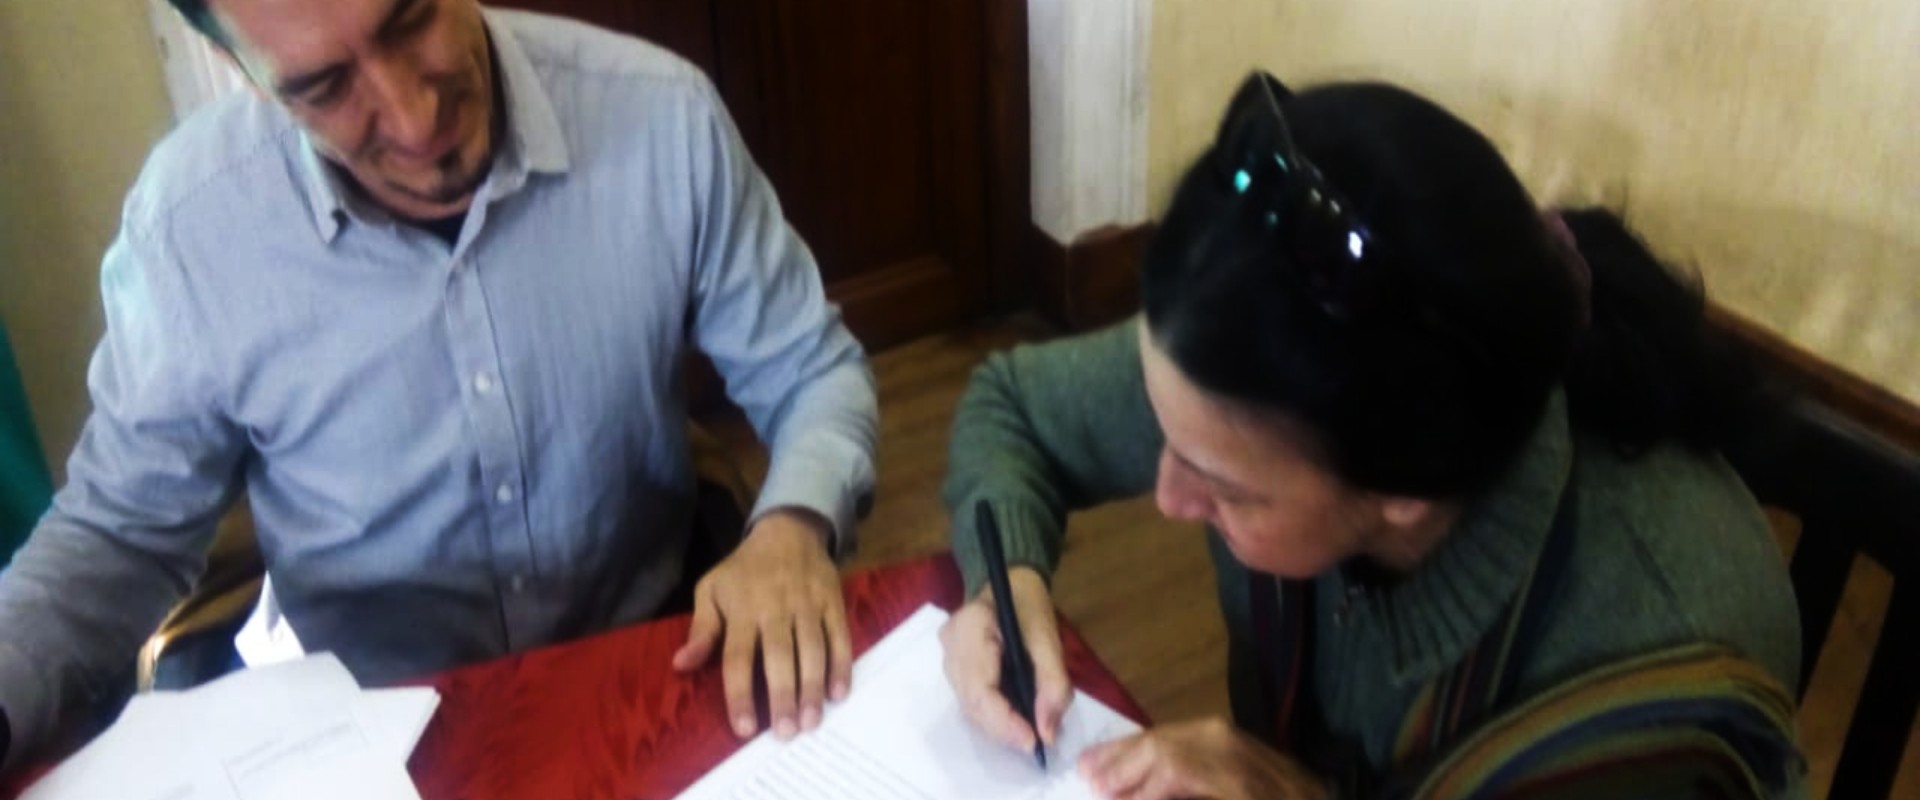 Se firmaron las escrituras de viviendas sociales en La Paz y La Providencia